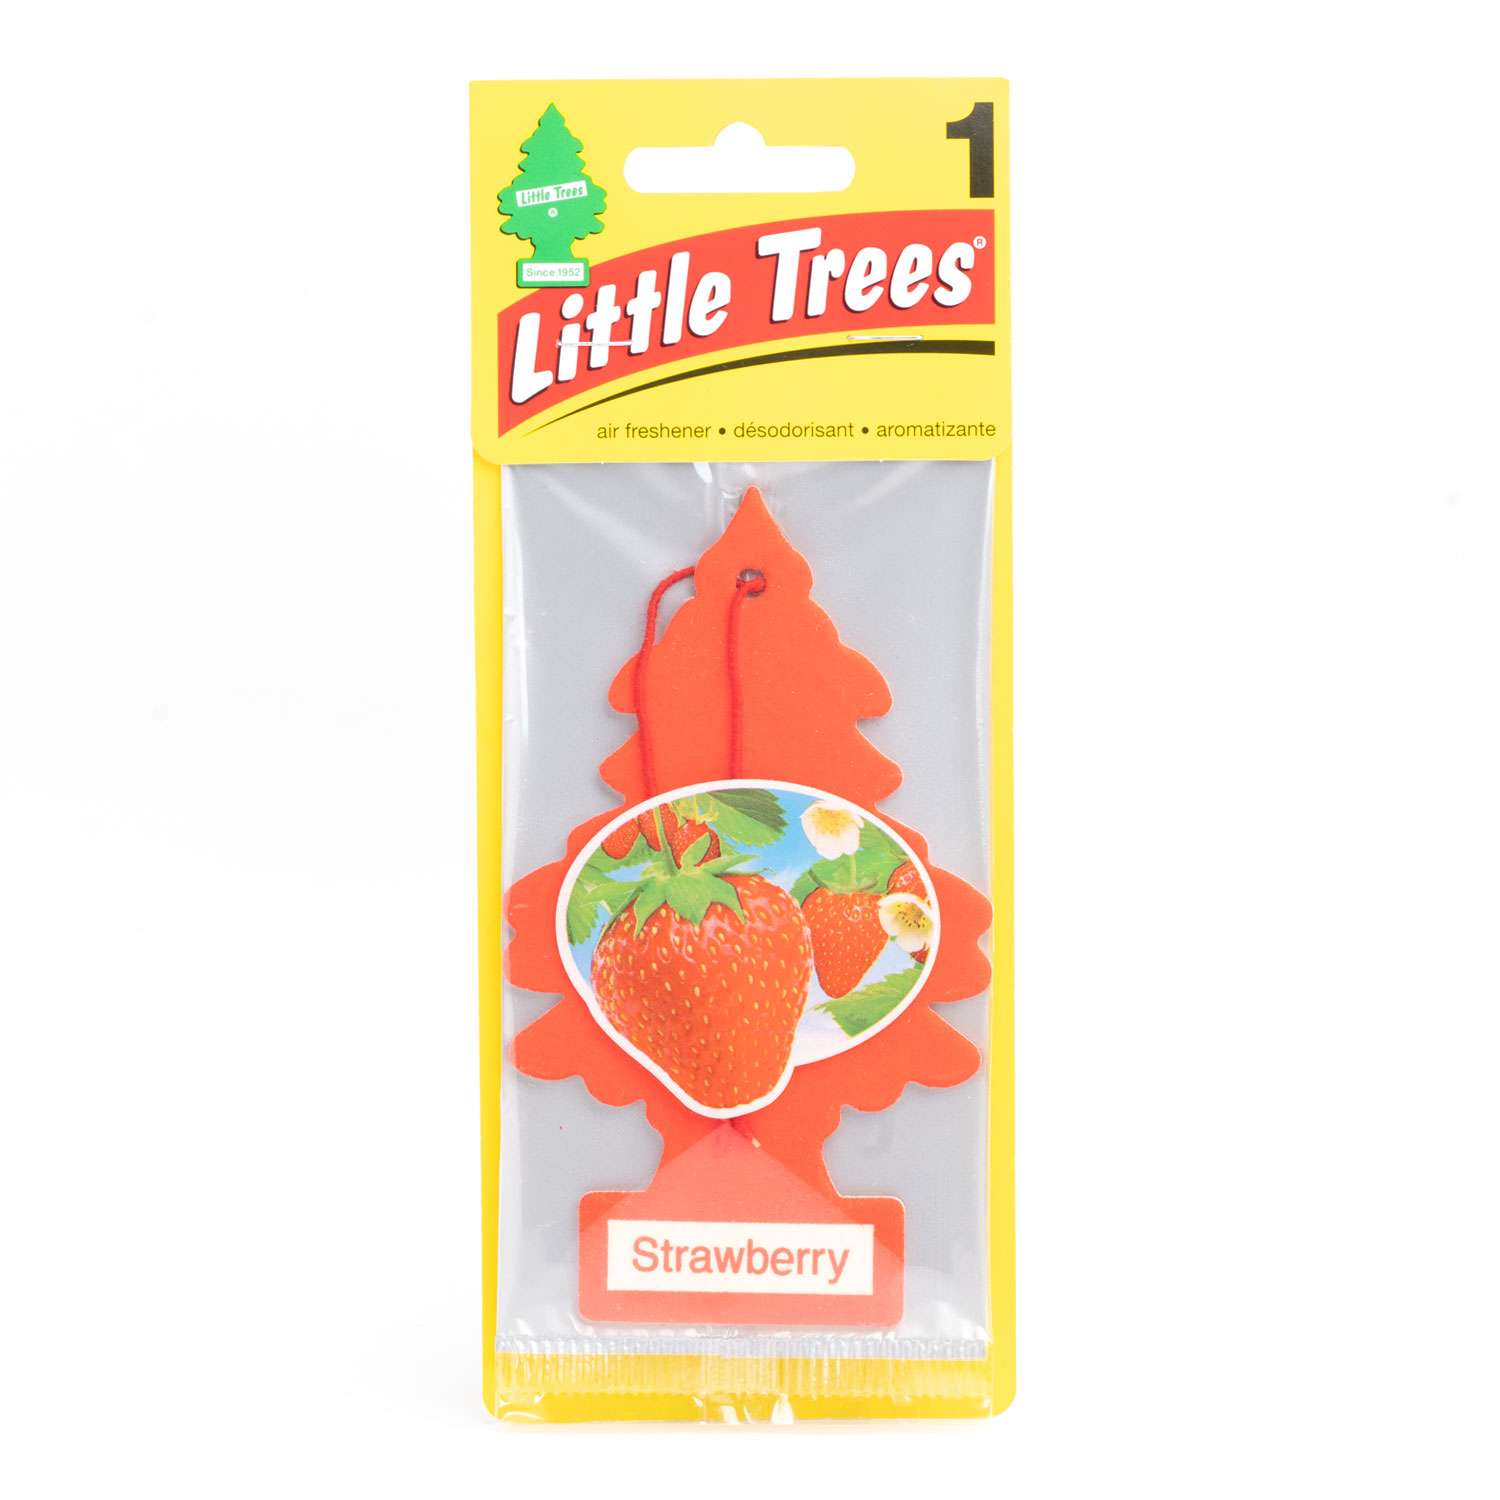 Little Trees Air Freshners